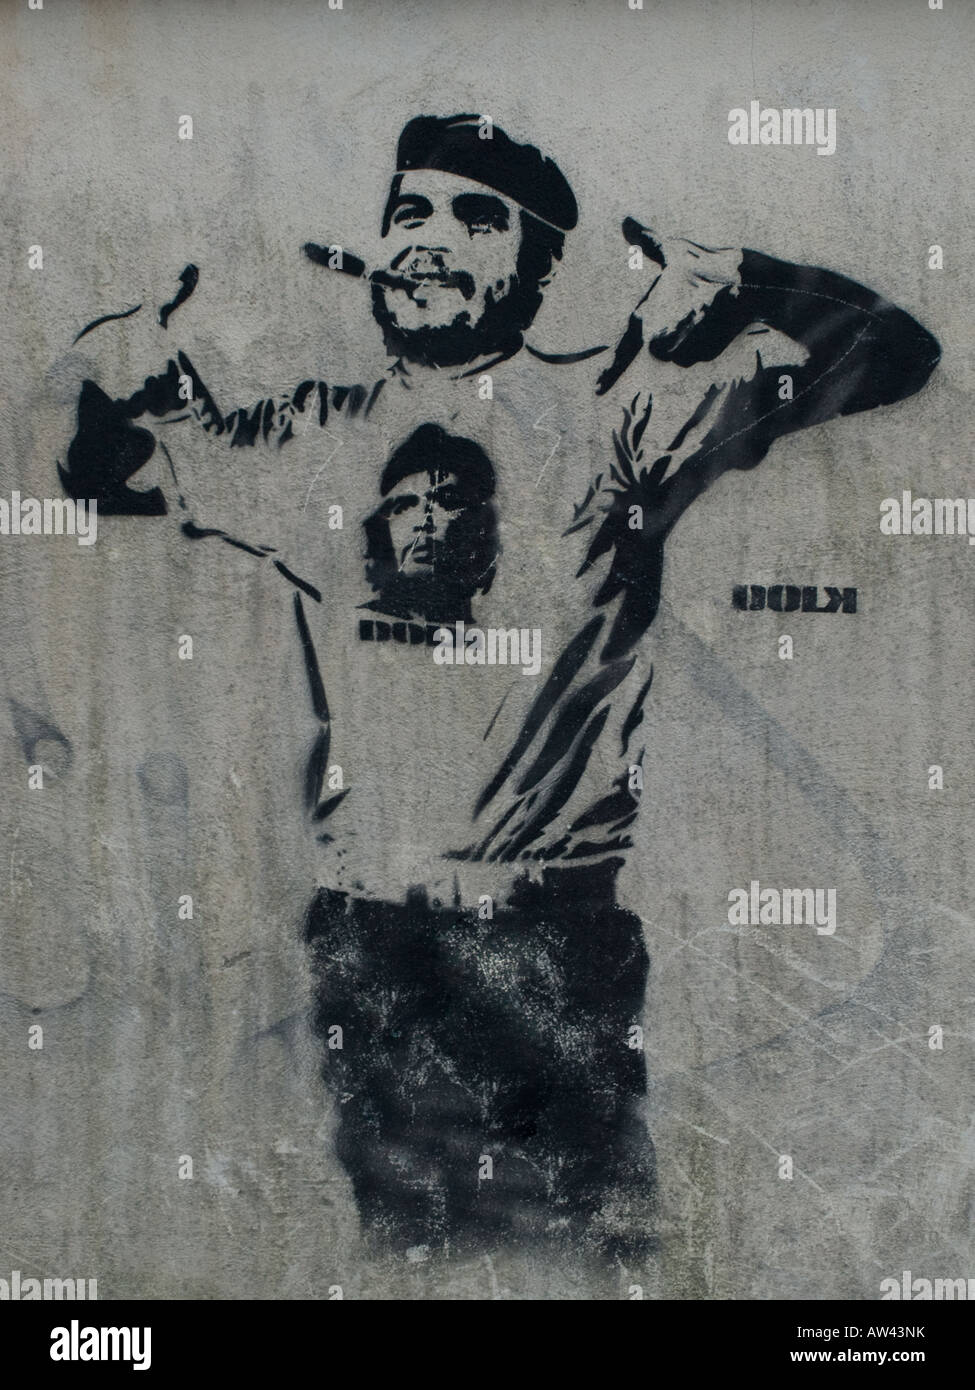 "Che XL' von Dolk Lundgren - Graffiti Schablone Kunst in Bergen, Norwegen. Stockfoto